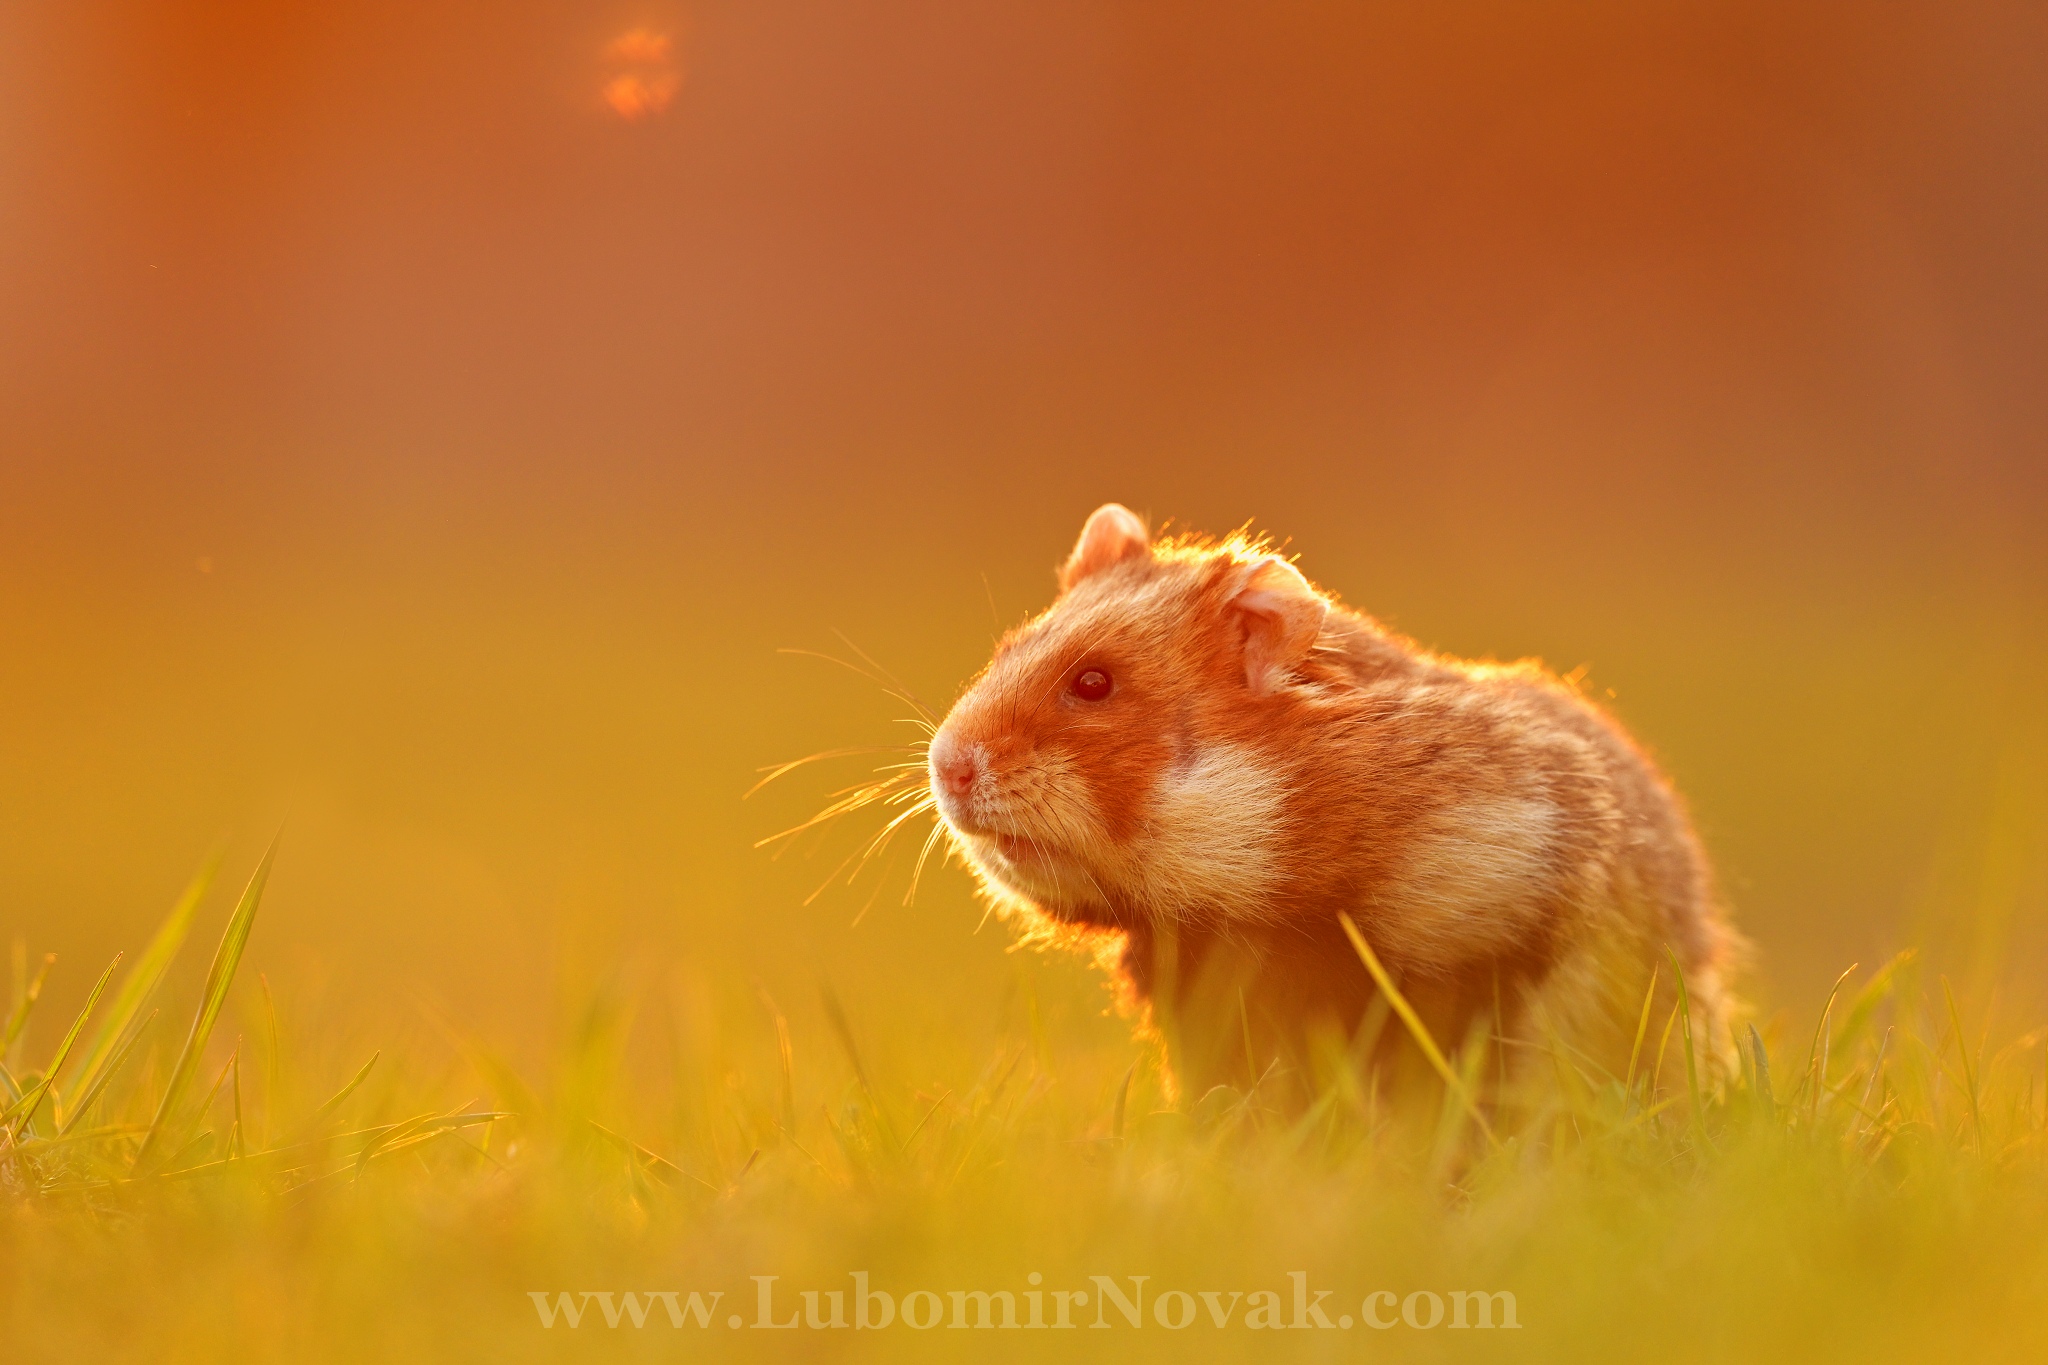 European hamster...